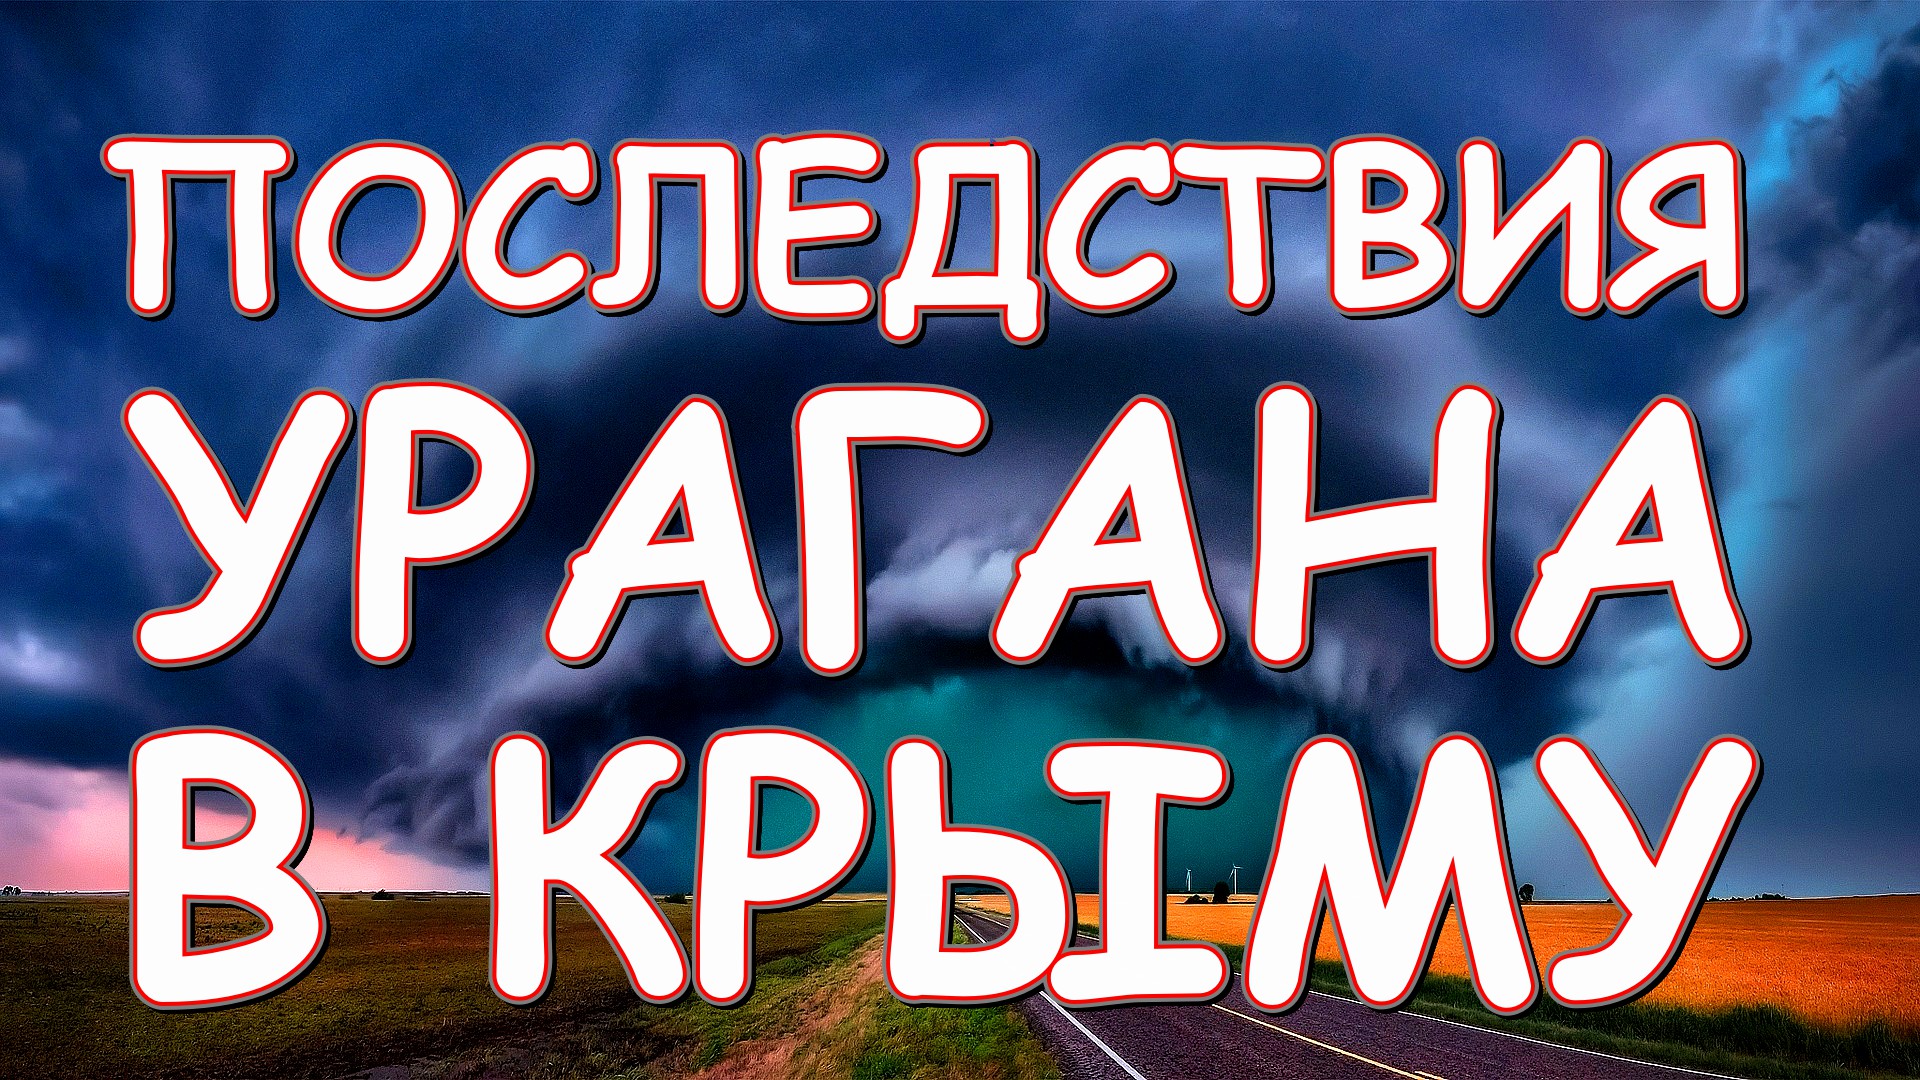 КРЫМ последствия УРАГАНА Симферополь Ялта Севастополь прогноз на 30 ноября продолжение следует.mp4